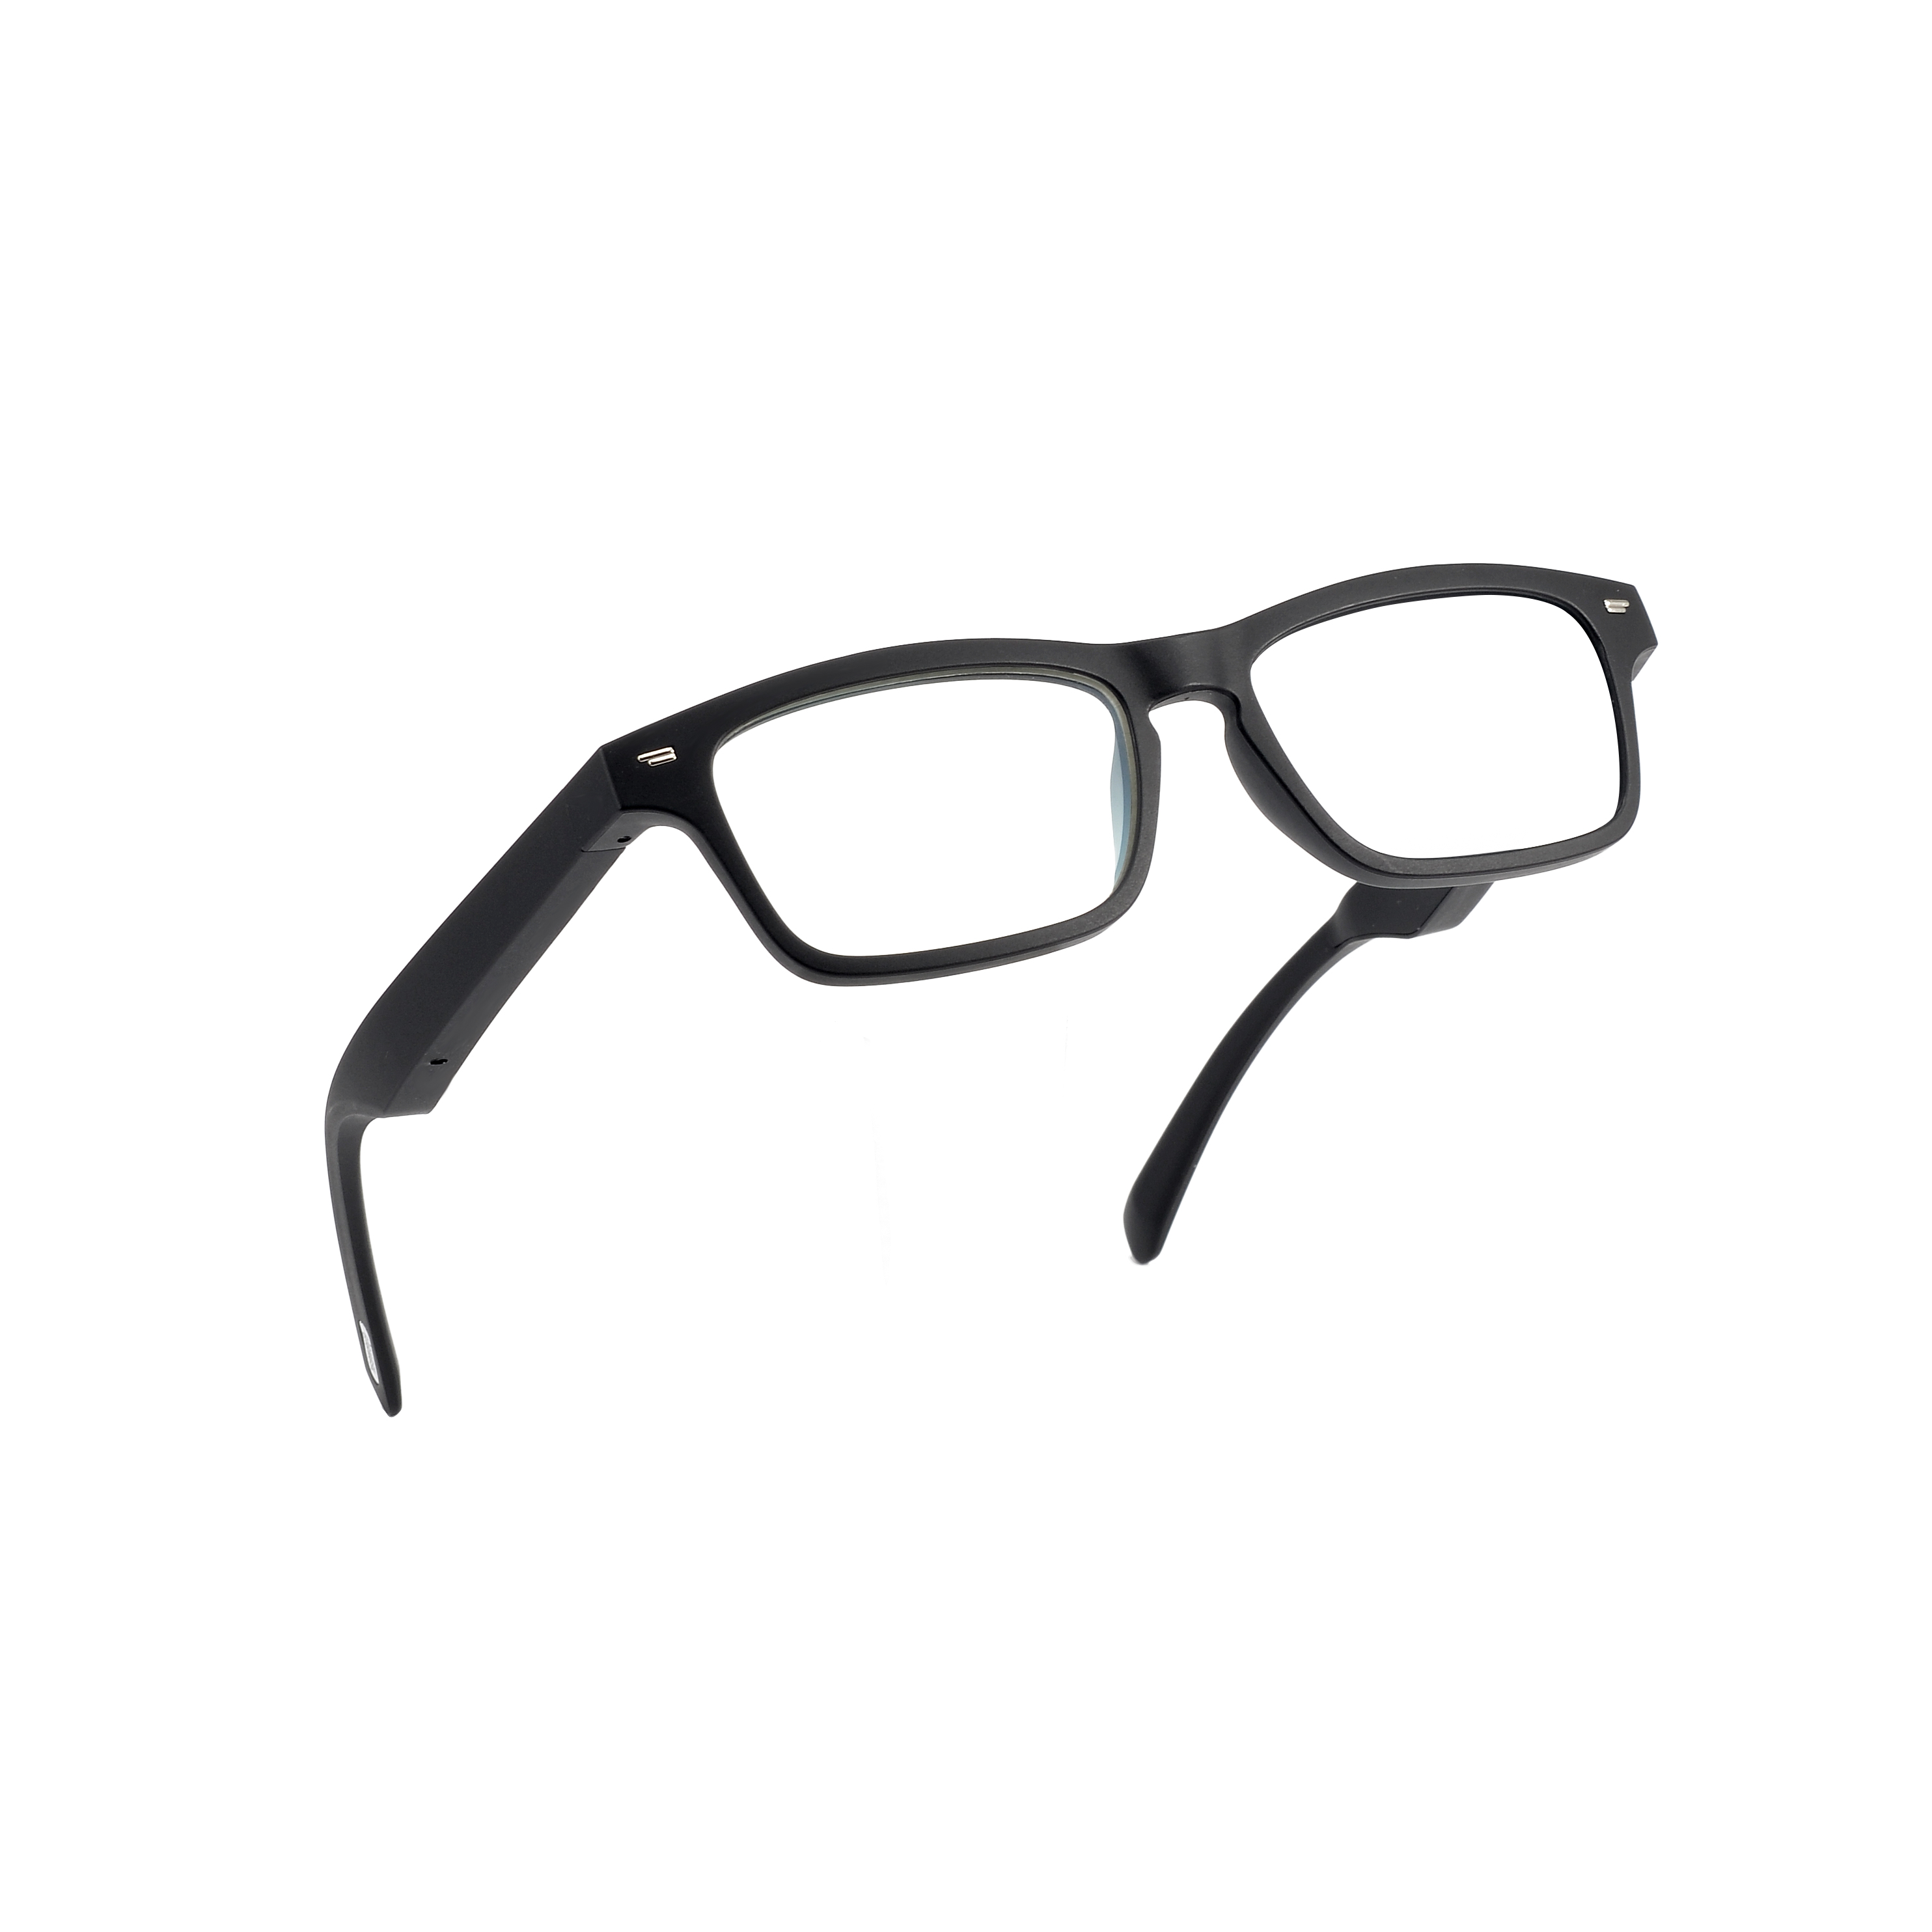 High reputation Relay Gps Tracker - Smart Glasses – Ubetter